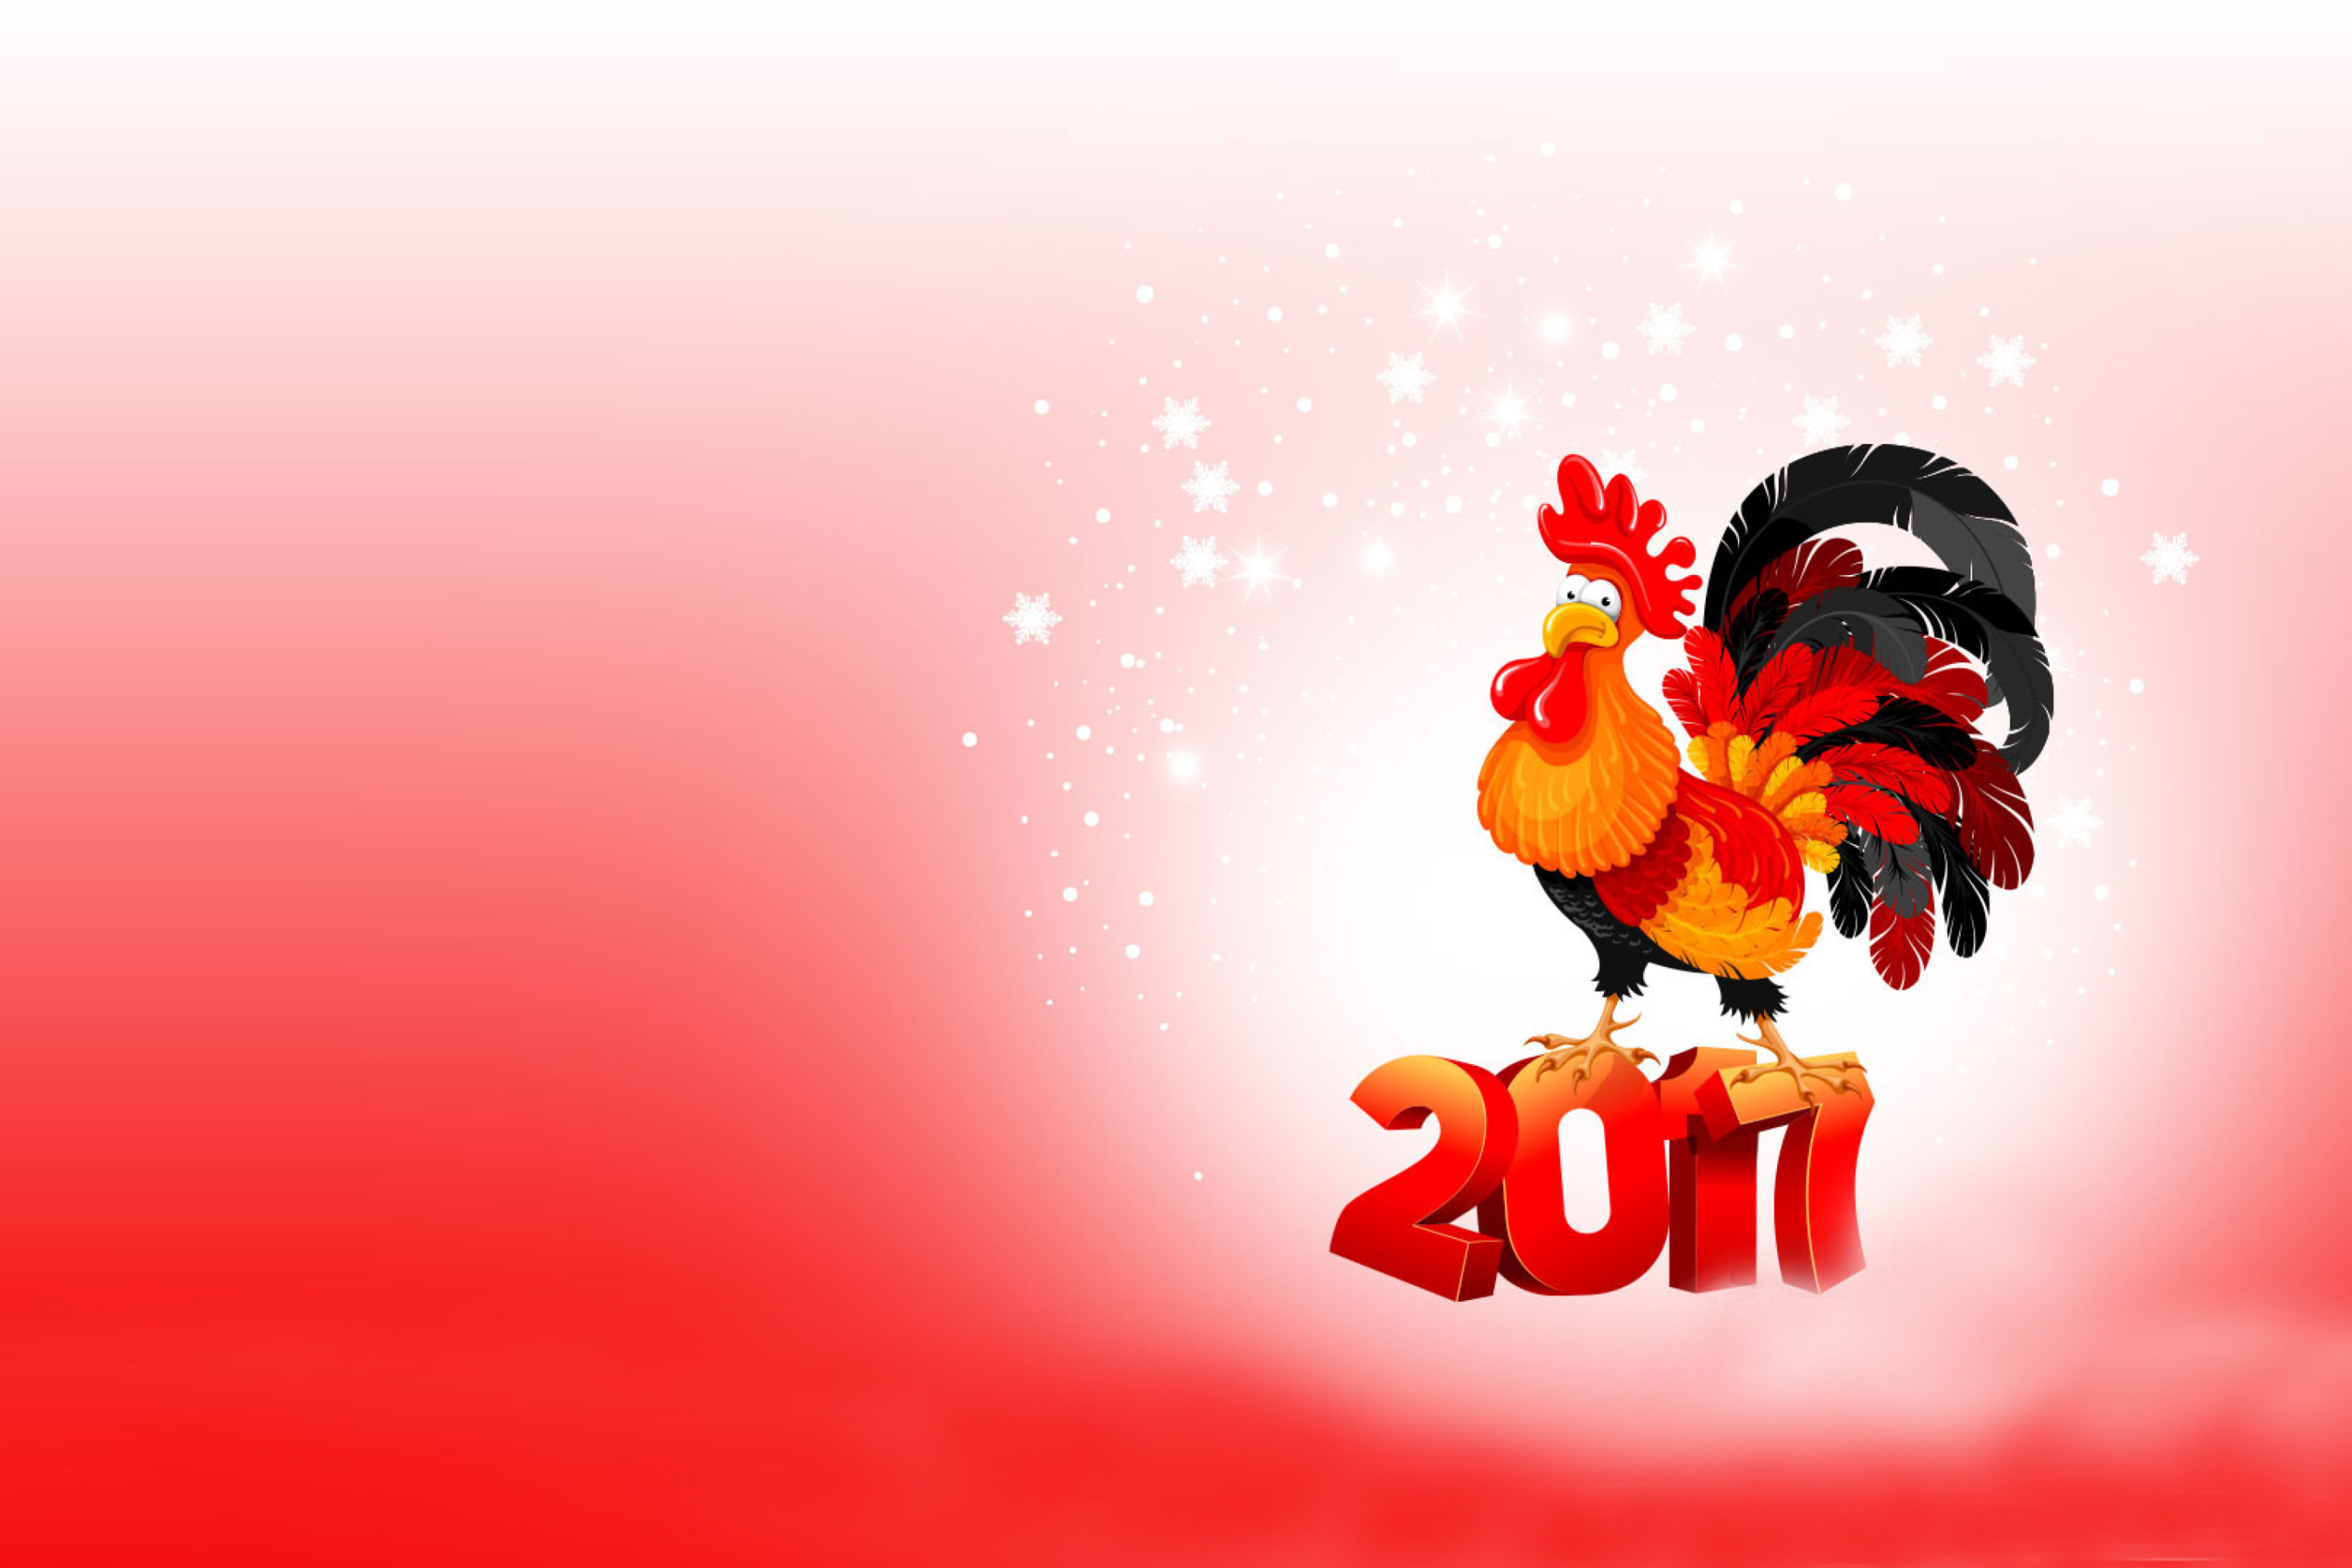 Обои 2017 New Year of Cock 2880x1920